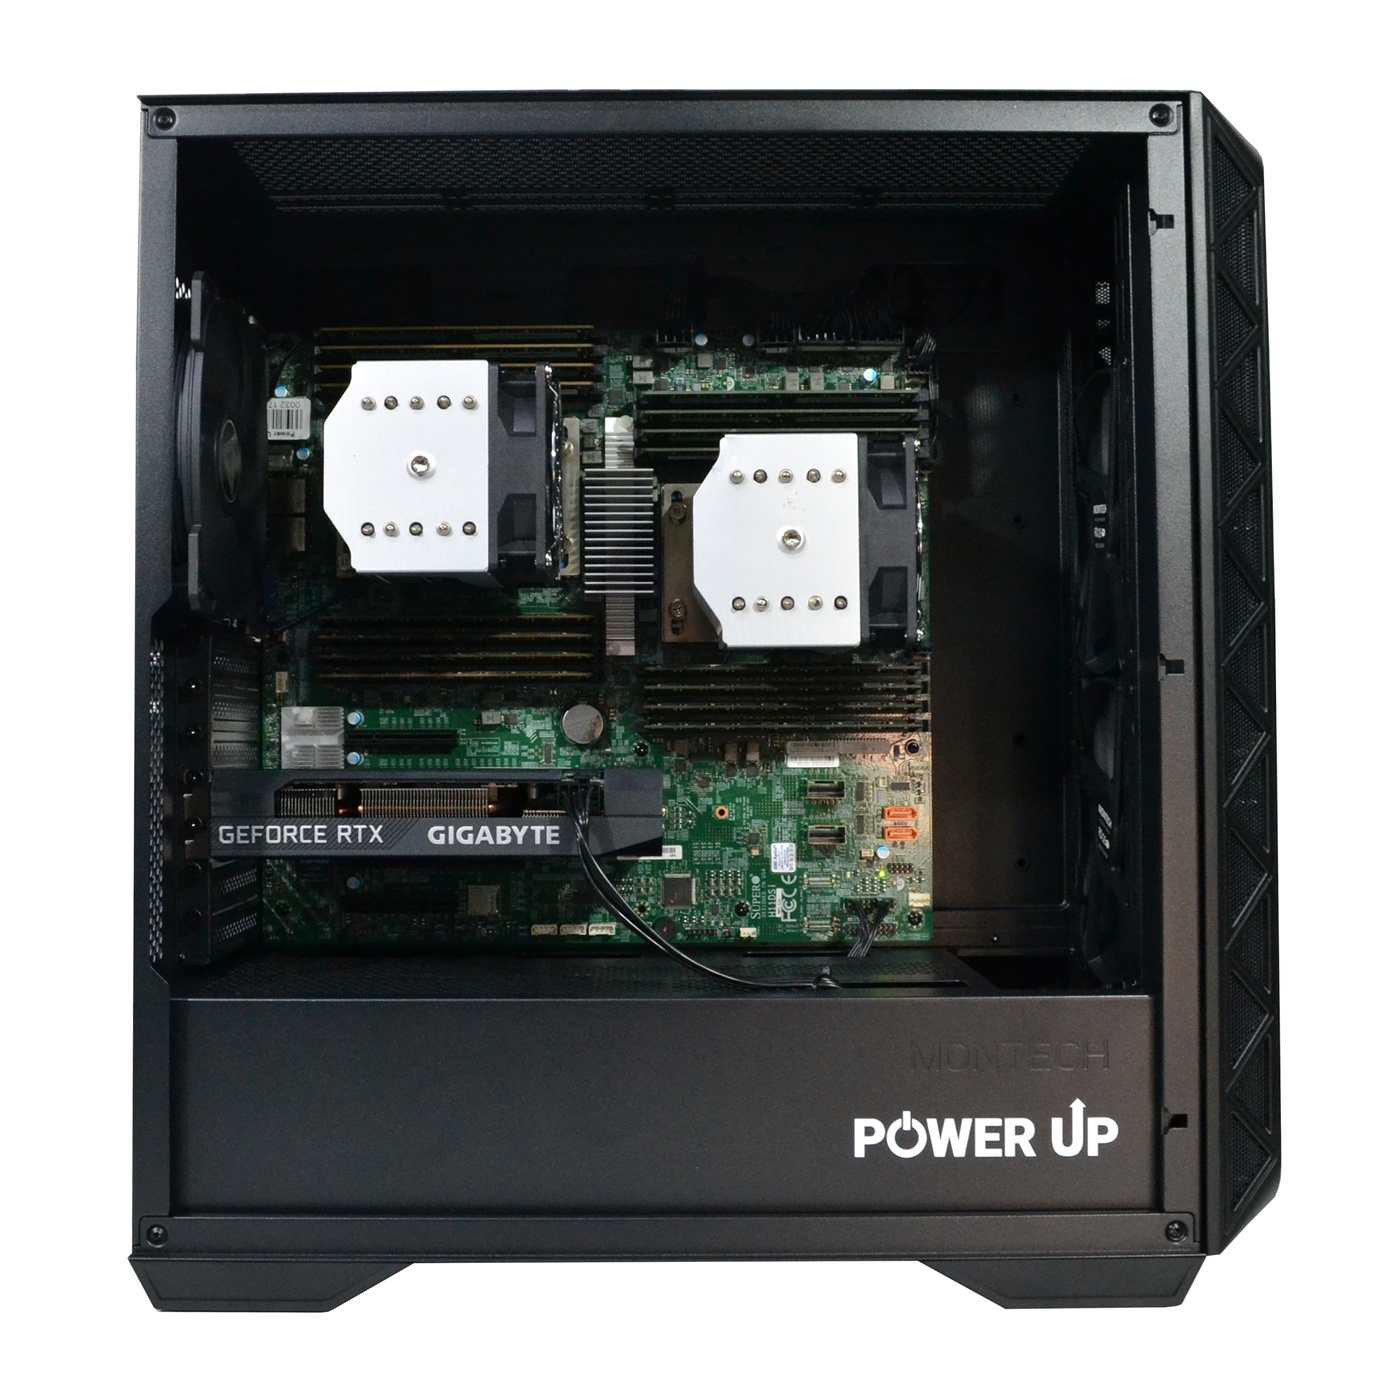 Двопроцесорна робоча станція PowerUp #380 AMD EPYC 7642 x2/128 GB/SSD 1TB/GeForce RTX 3060 12GB